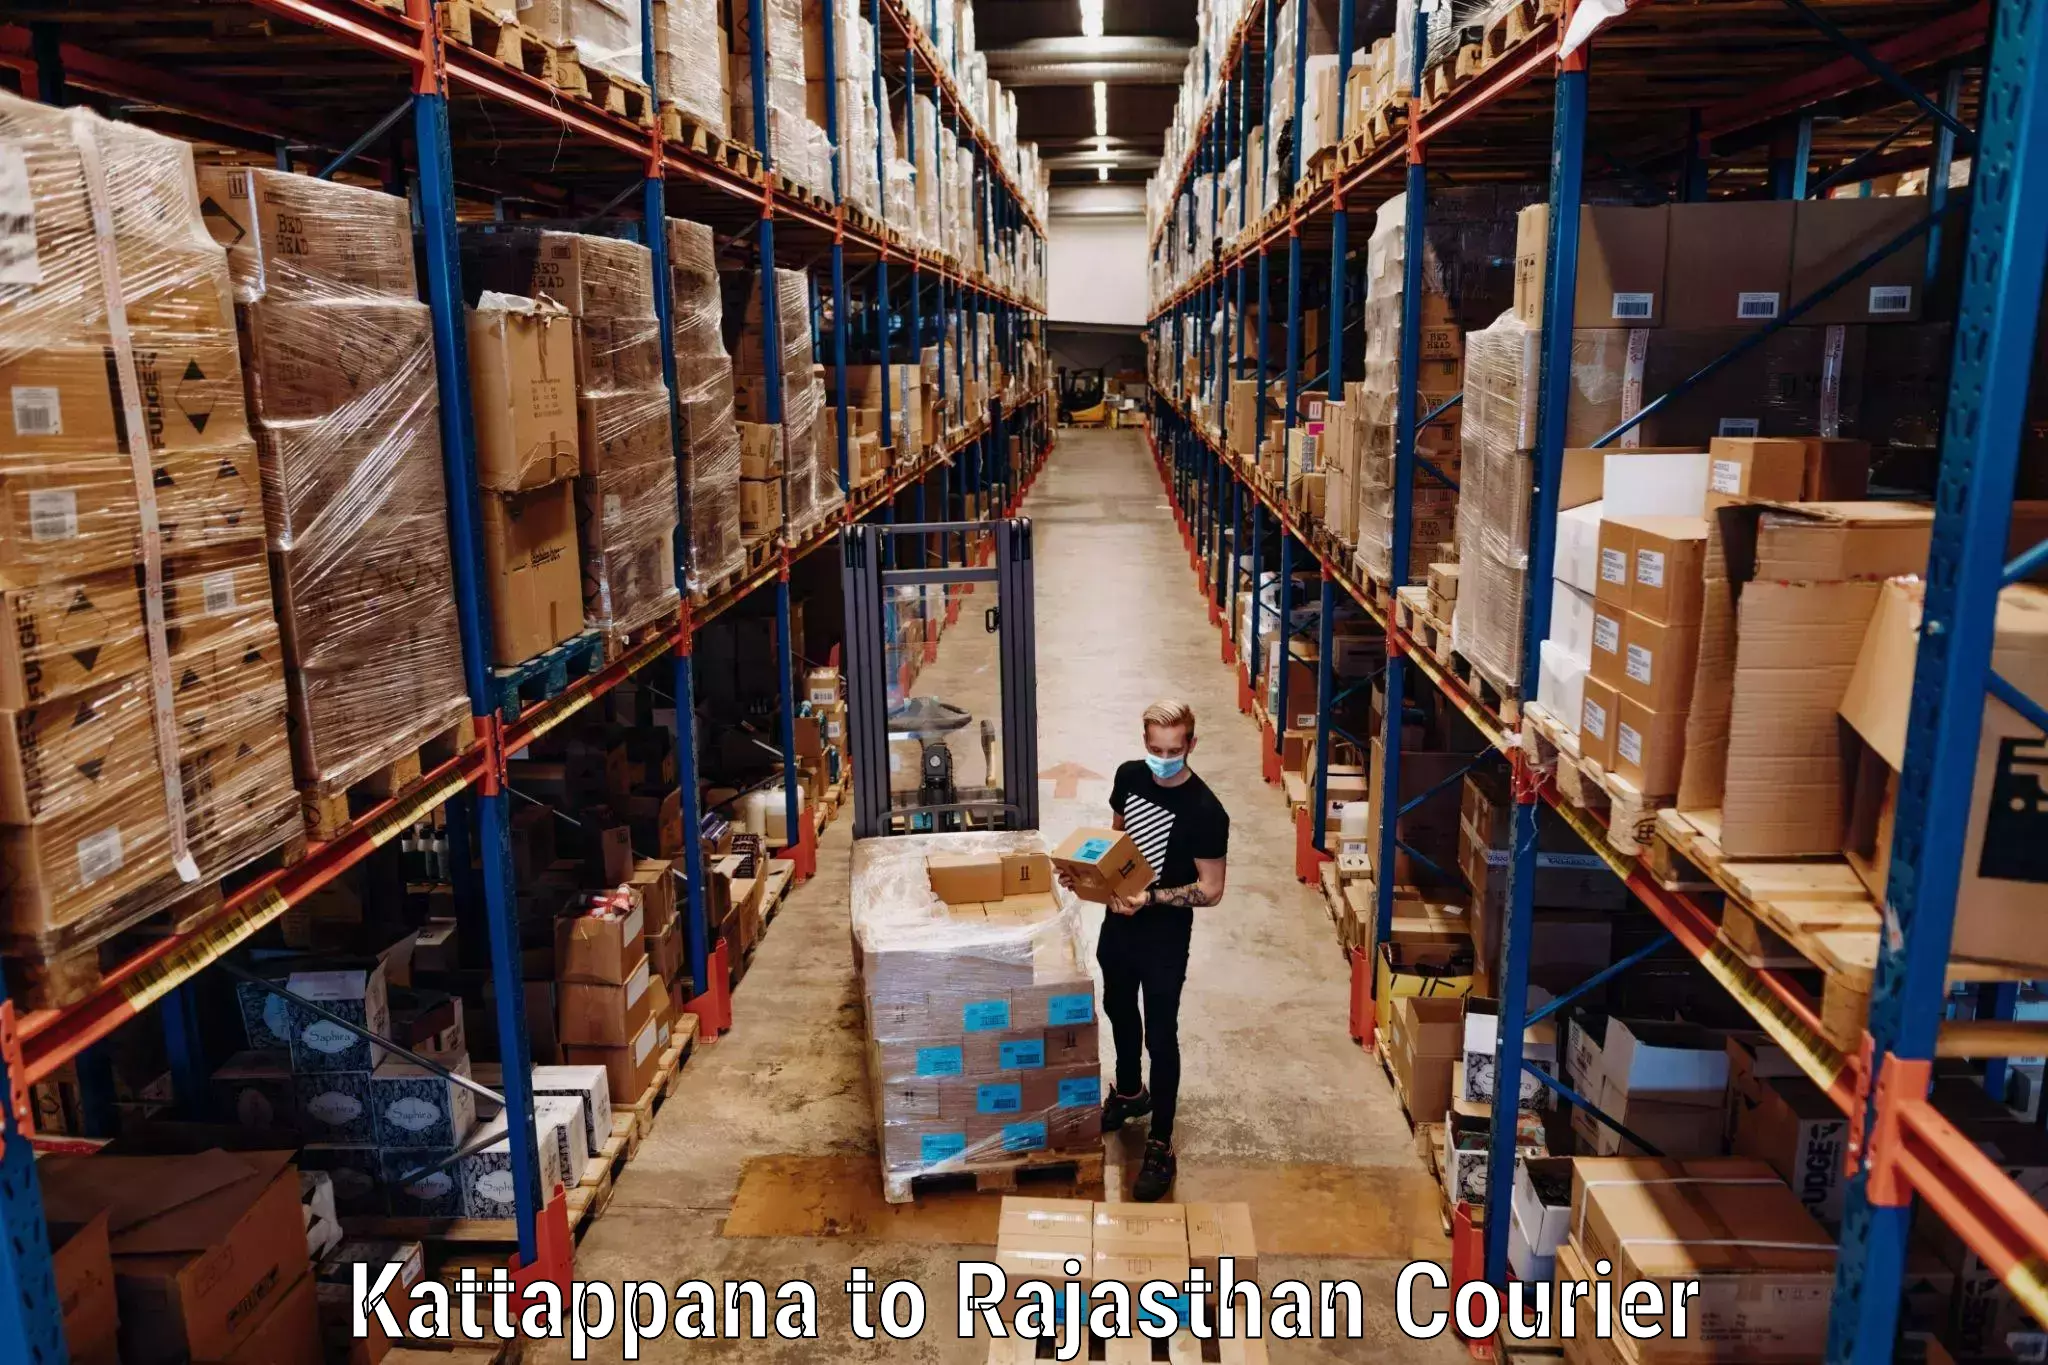 Baggage shipping service Kattappana to Yathalakunta